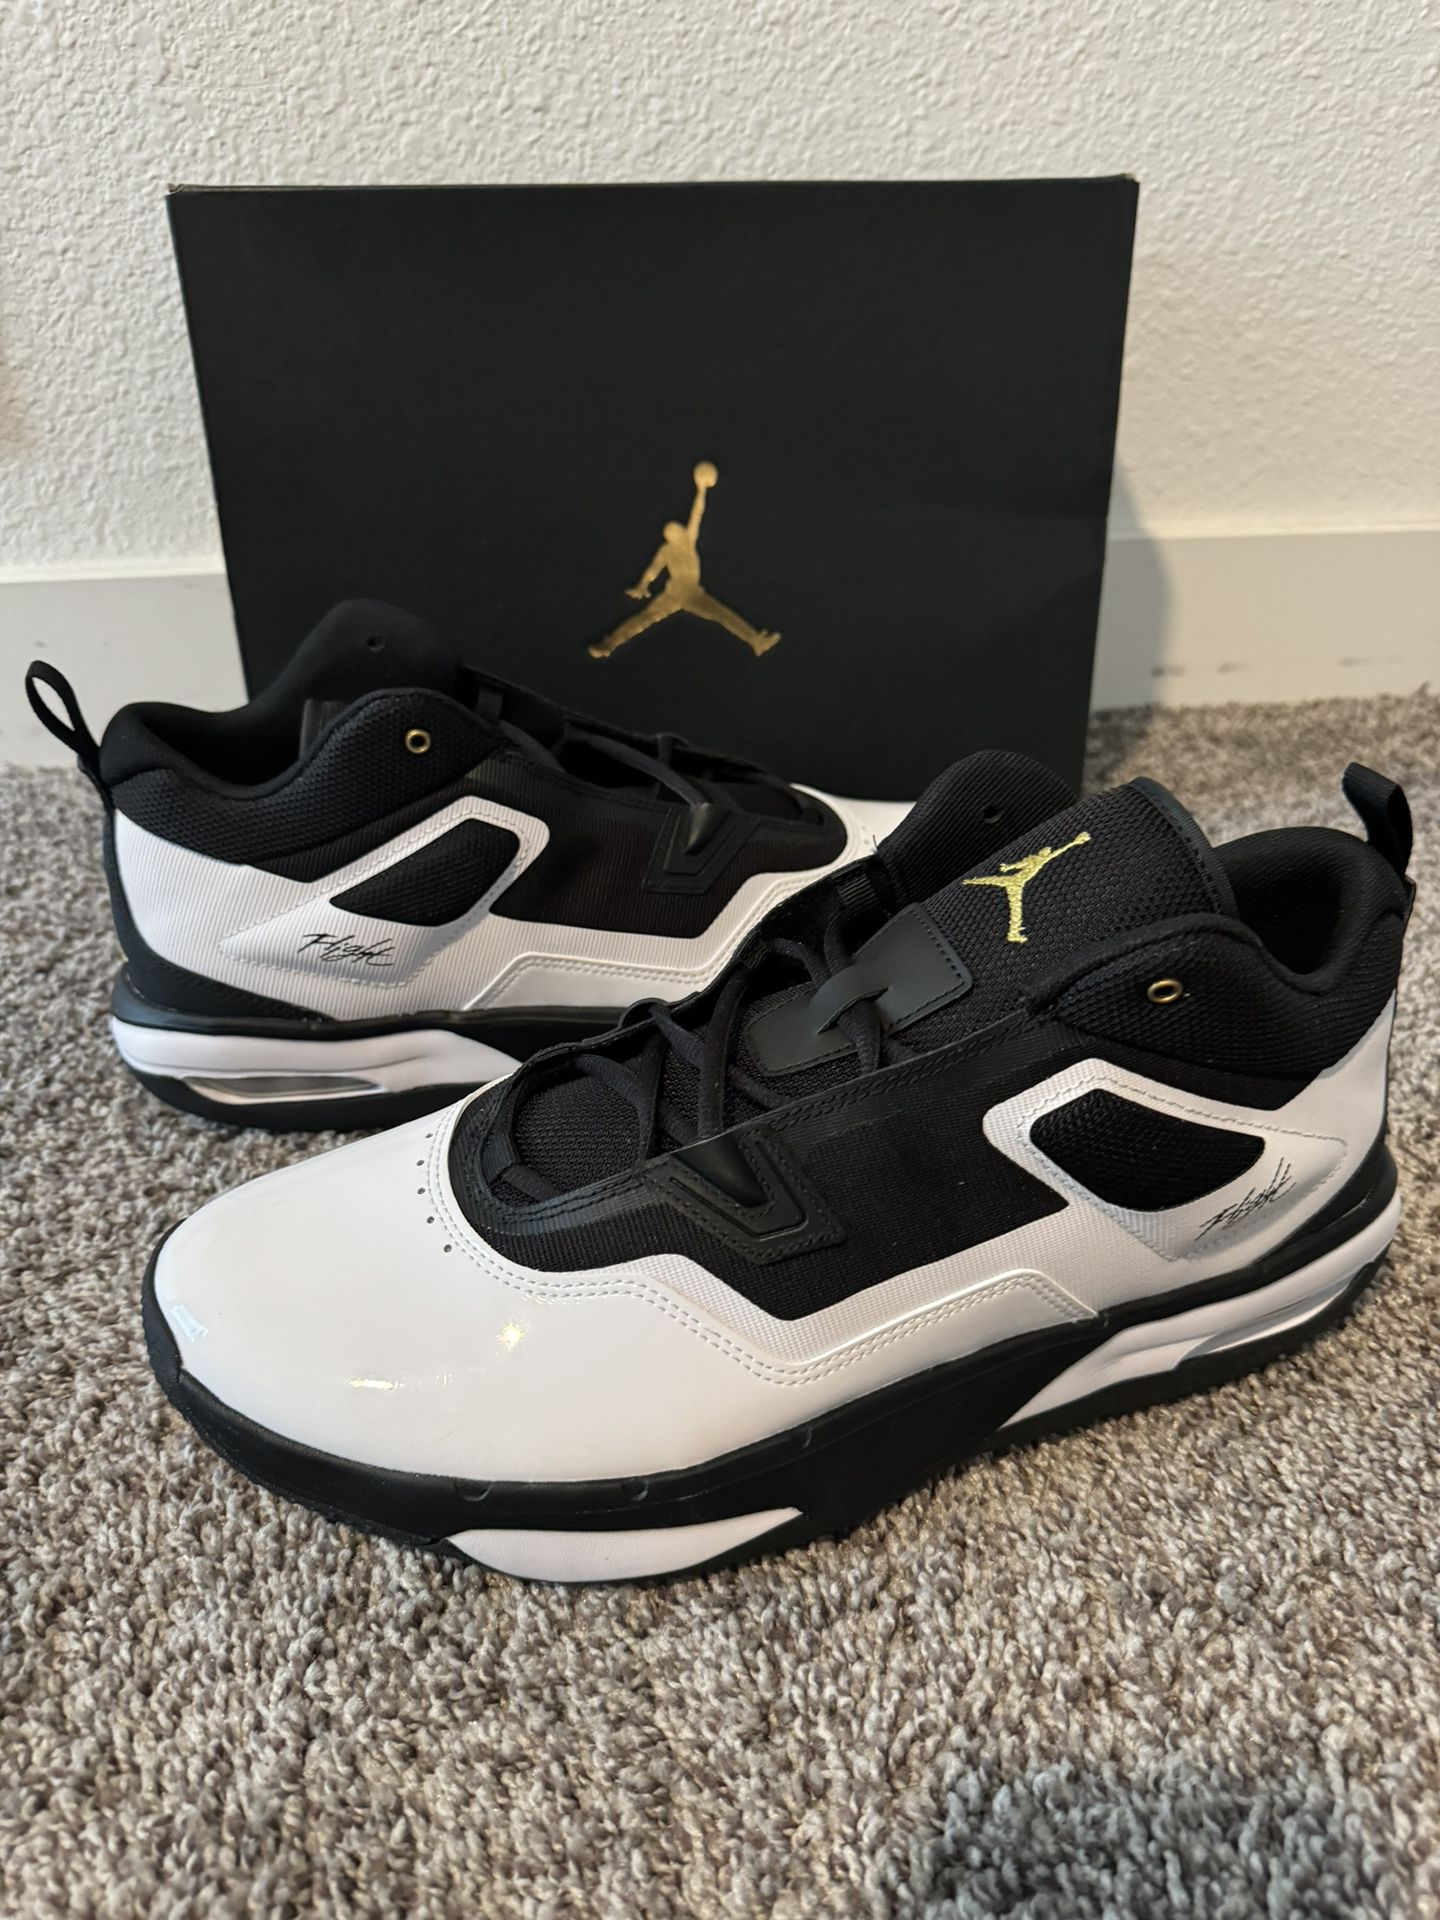 Jordan men’s Size 13 Brand New 